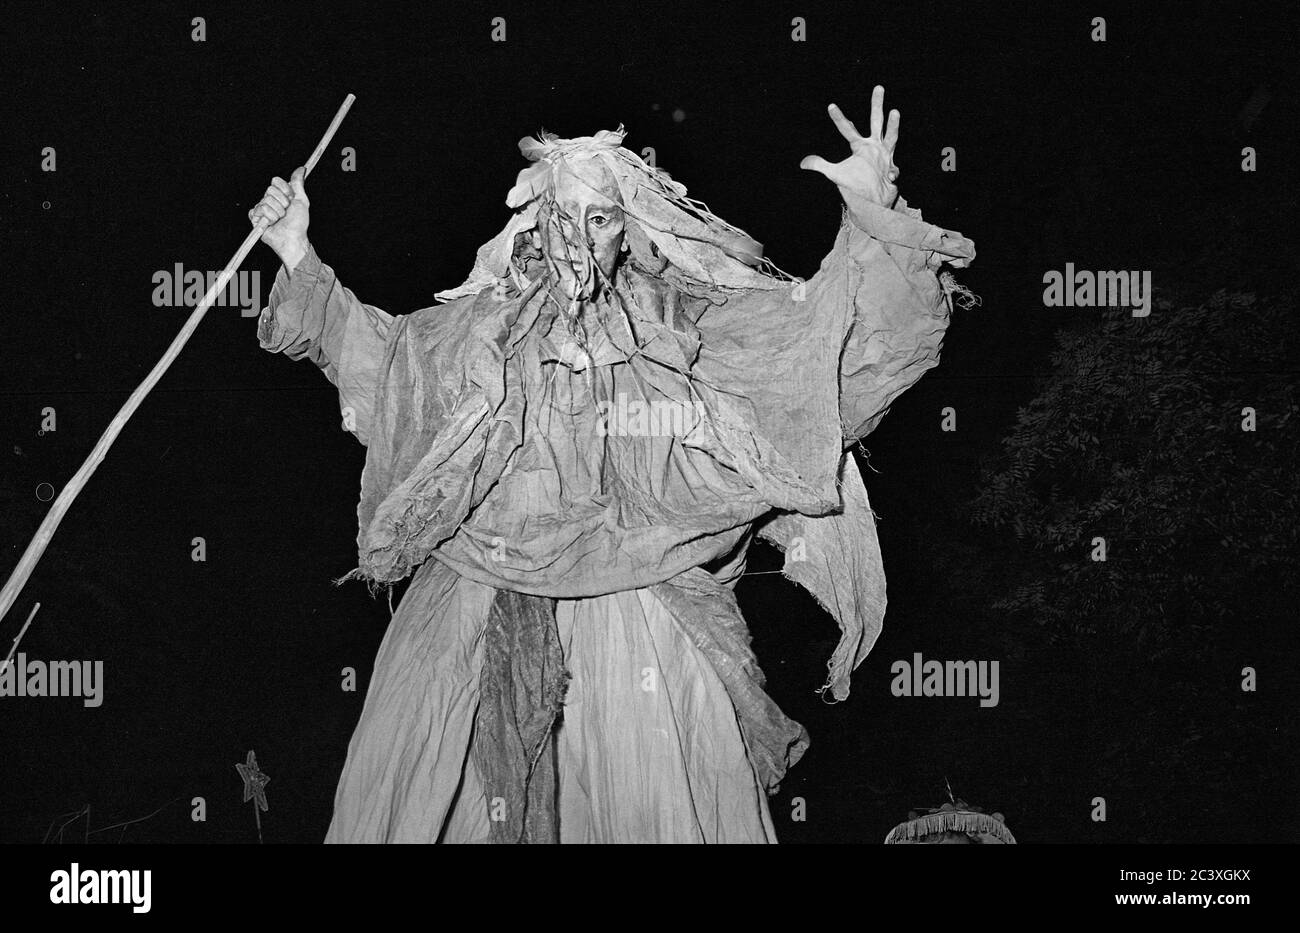 Costume da spazzatrice alla Greenwich Village Halloween Parade, New York City, USA negli anni '80 fotografato con film in bianco e nero di notte. Foto Stock